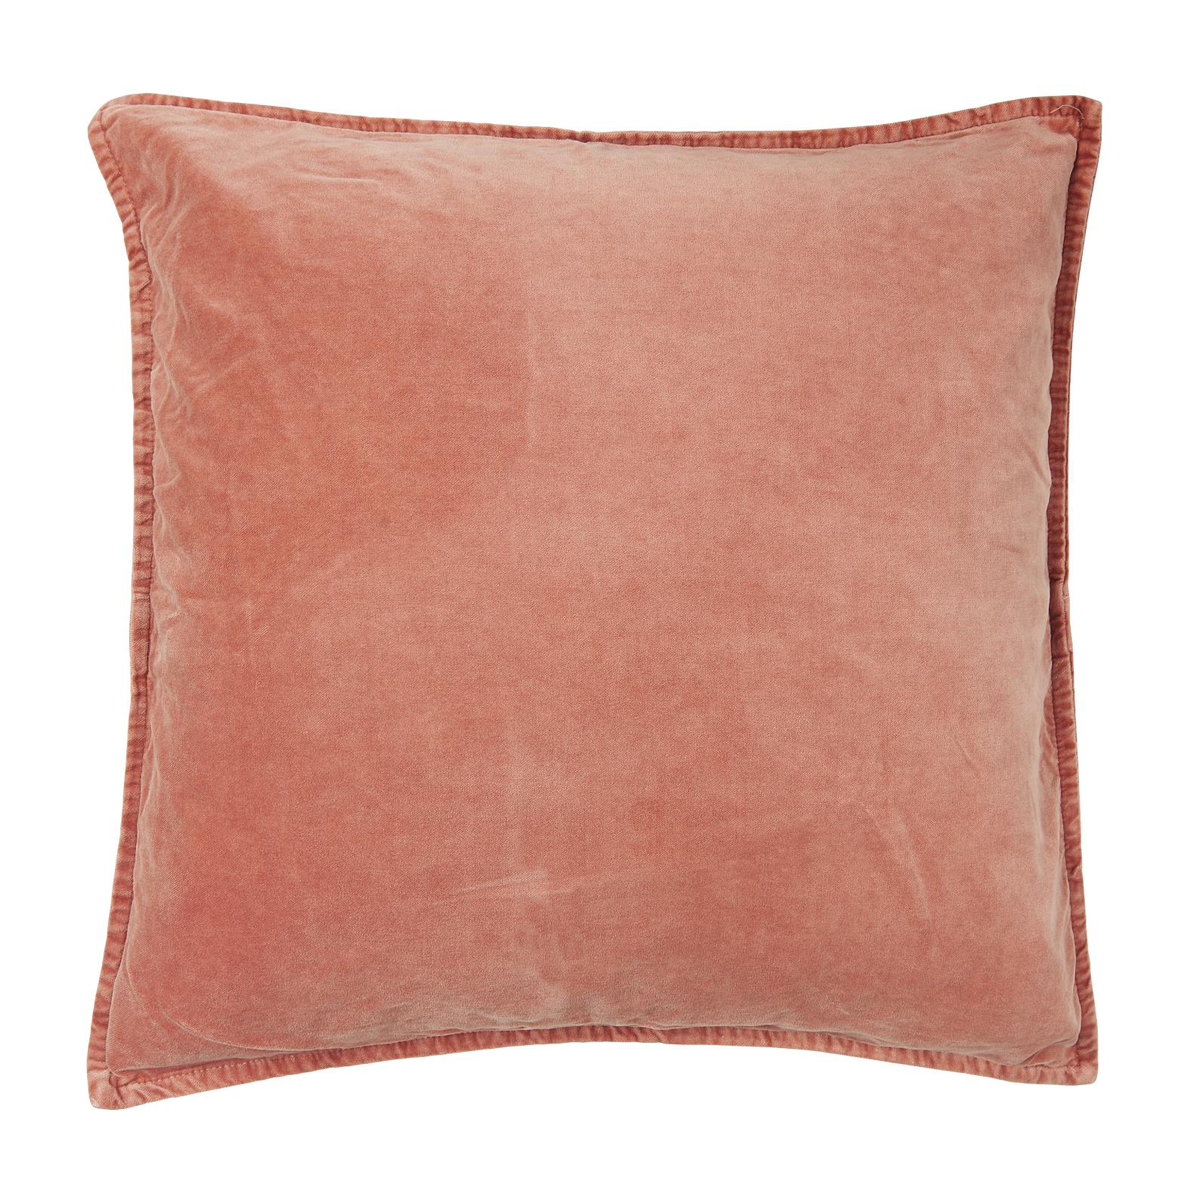 IB Laursen Cushion Velvet Desert Rose